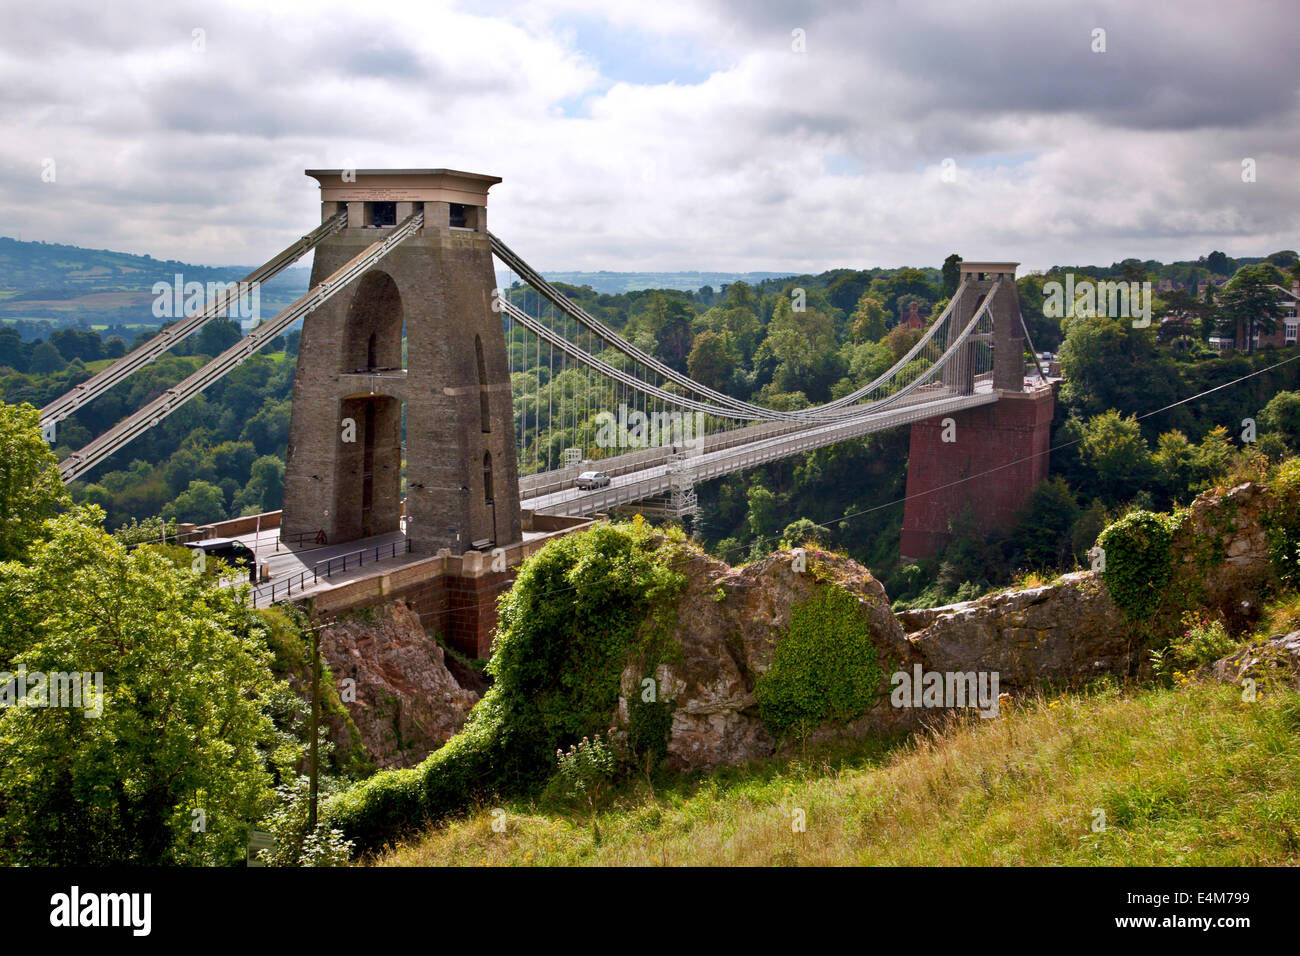 Clifton Suspension Bridge in Bristol, UK Stock Photo